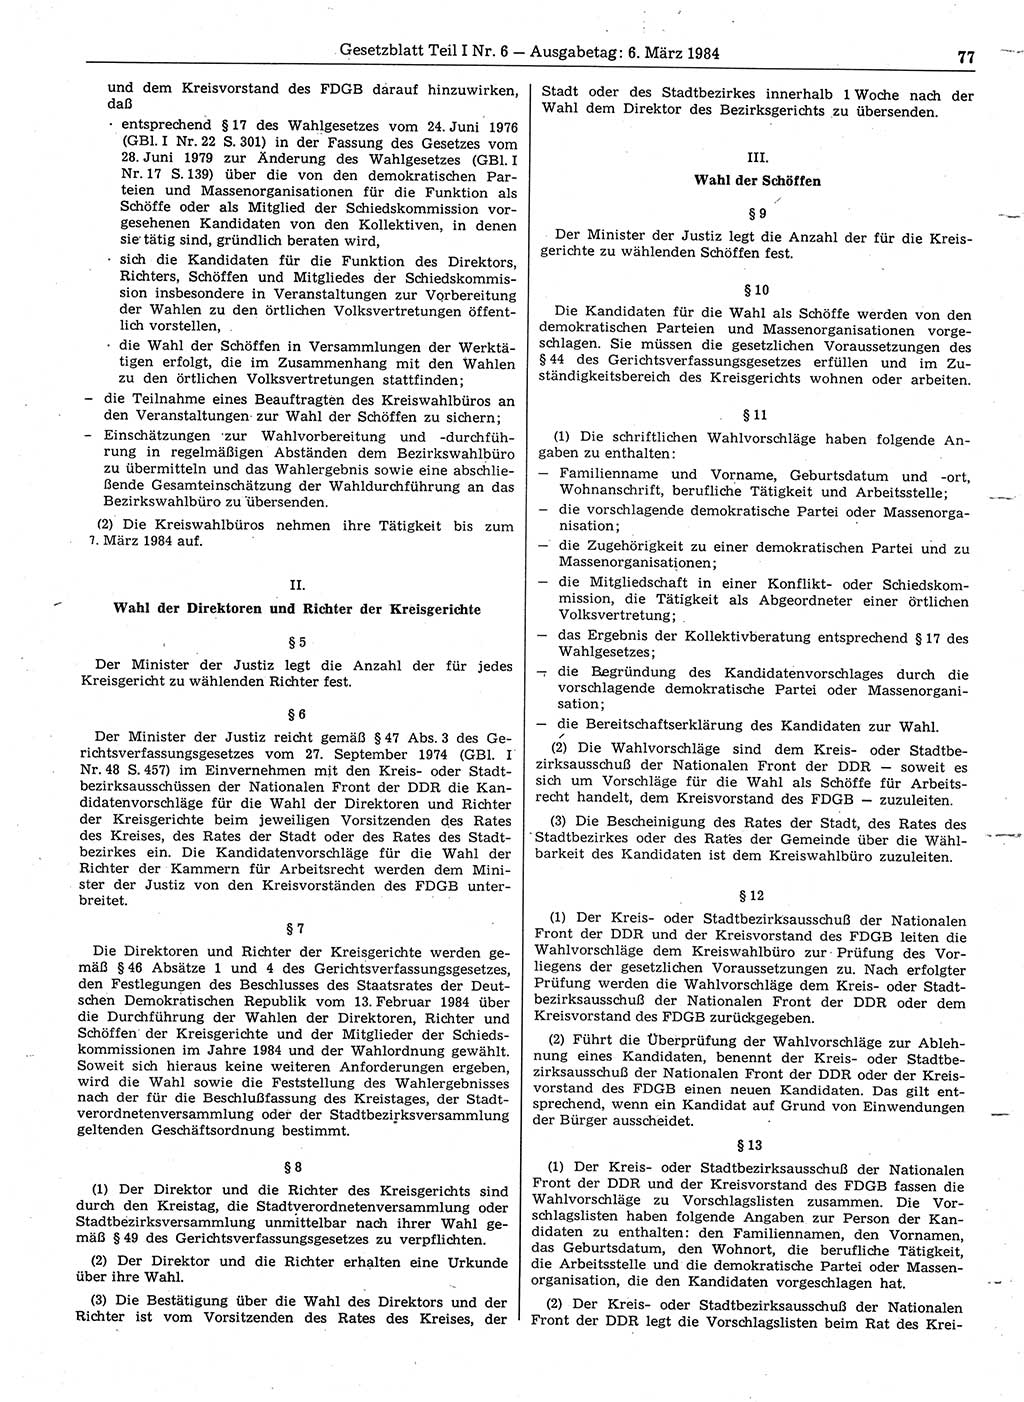 Gesetzblatt (GBl.) der Deutschen Demokratischen Republik (DDR) Teil Ⅰ 1984, Seite 77 (GBl. DDR Ⅰ 1984, S. 77)